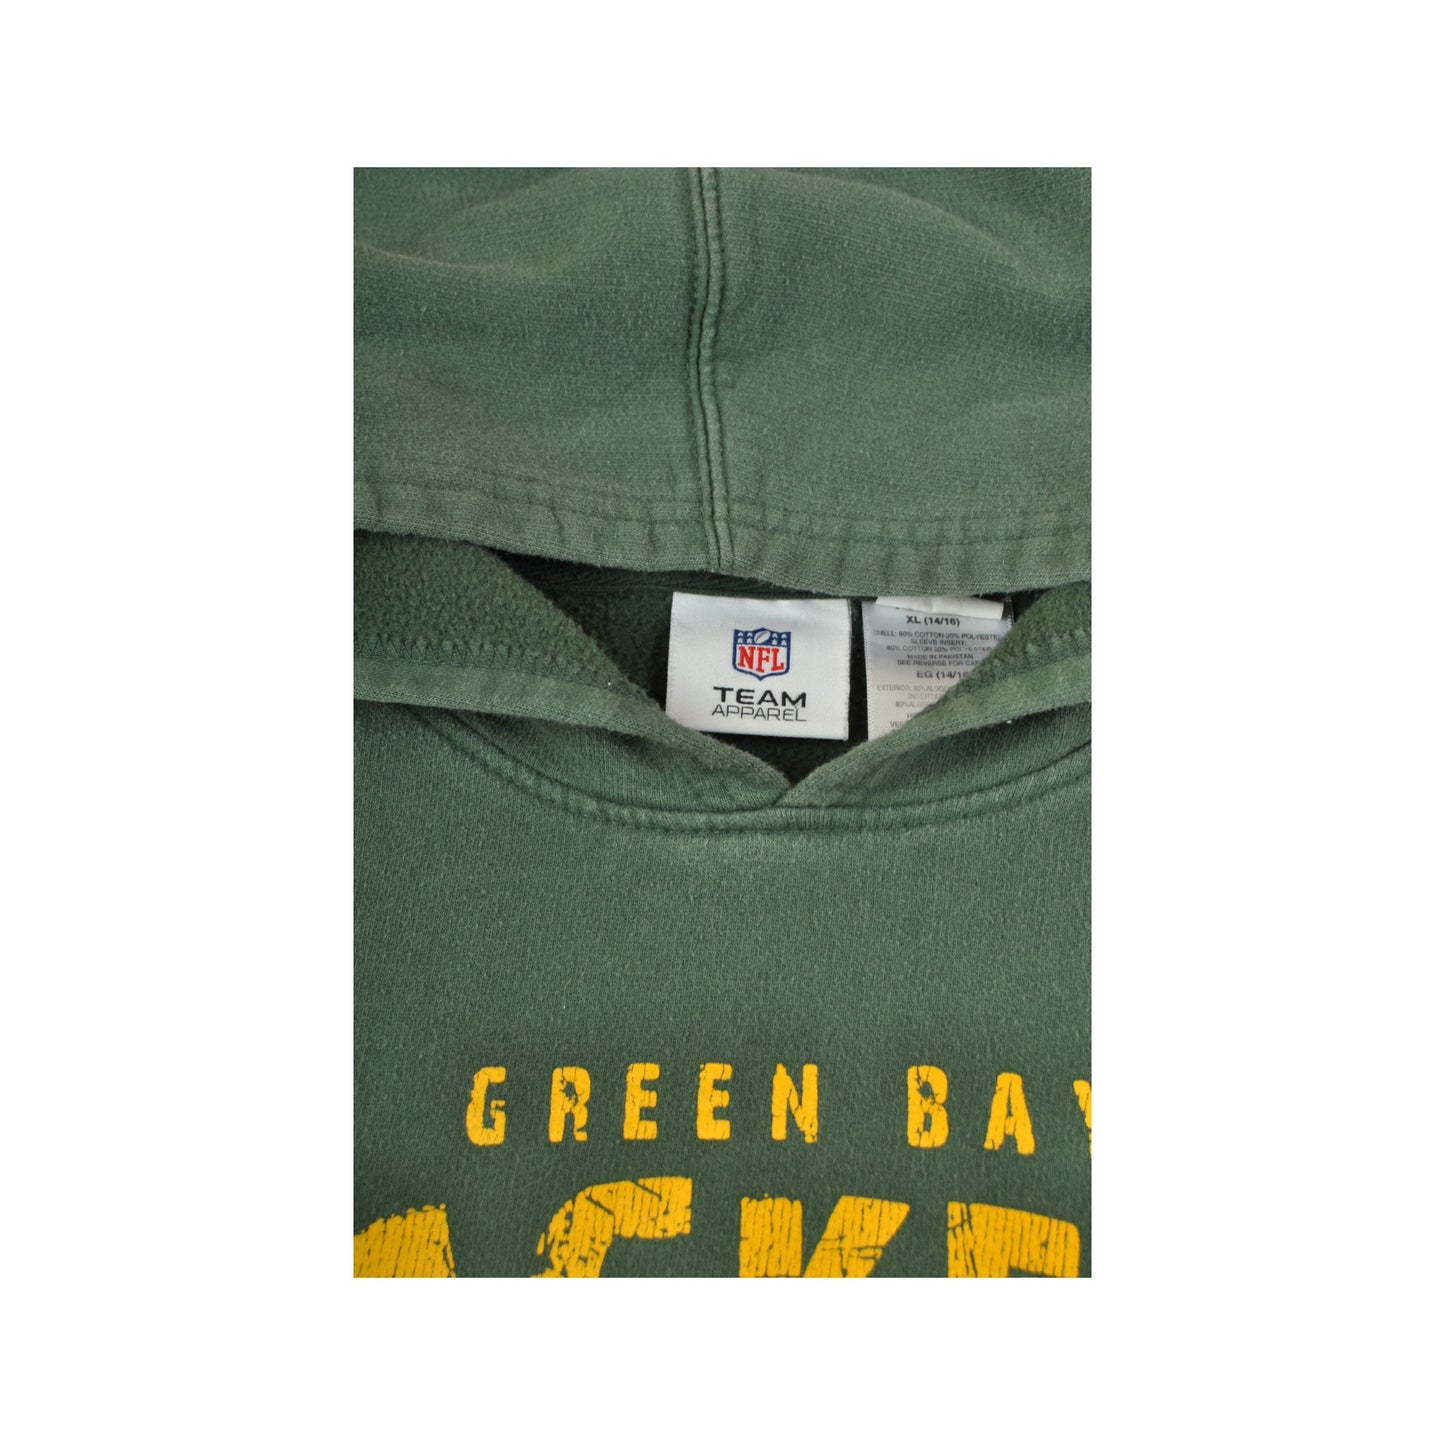 Vintage NFL Green Bay Packers Hoodie Sweatshirt Green Ladies XS